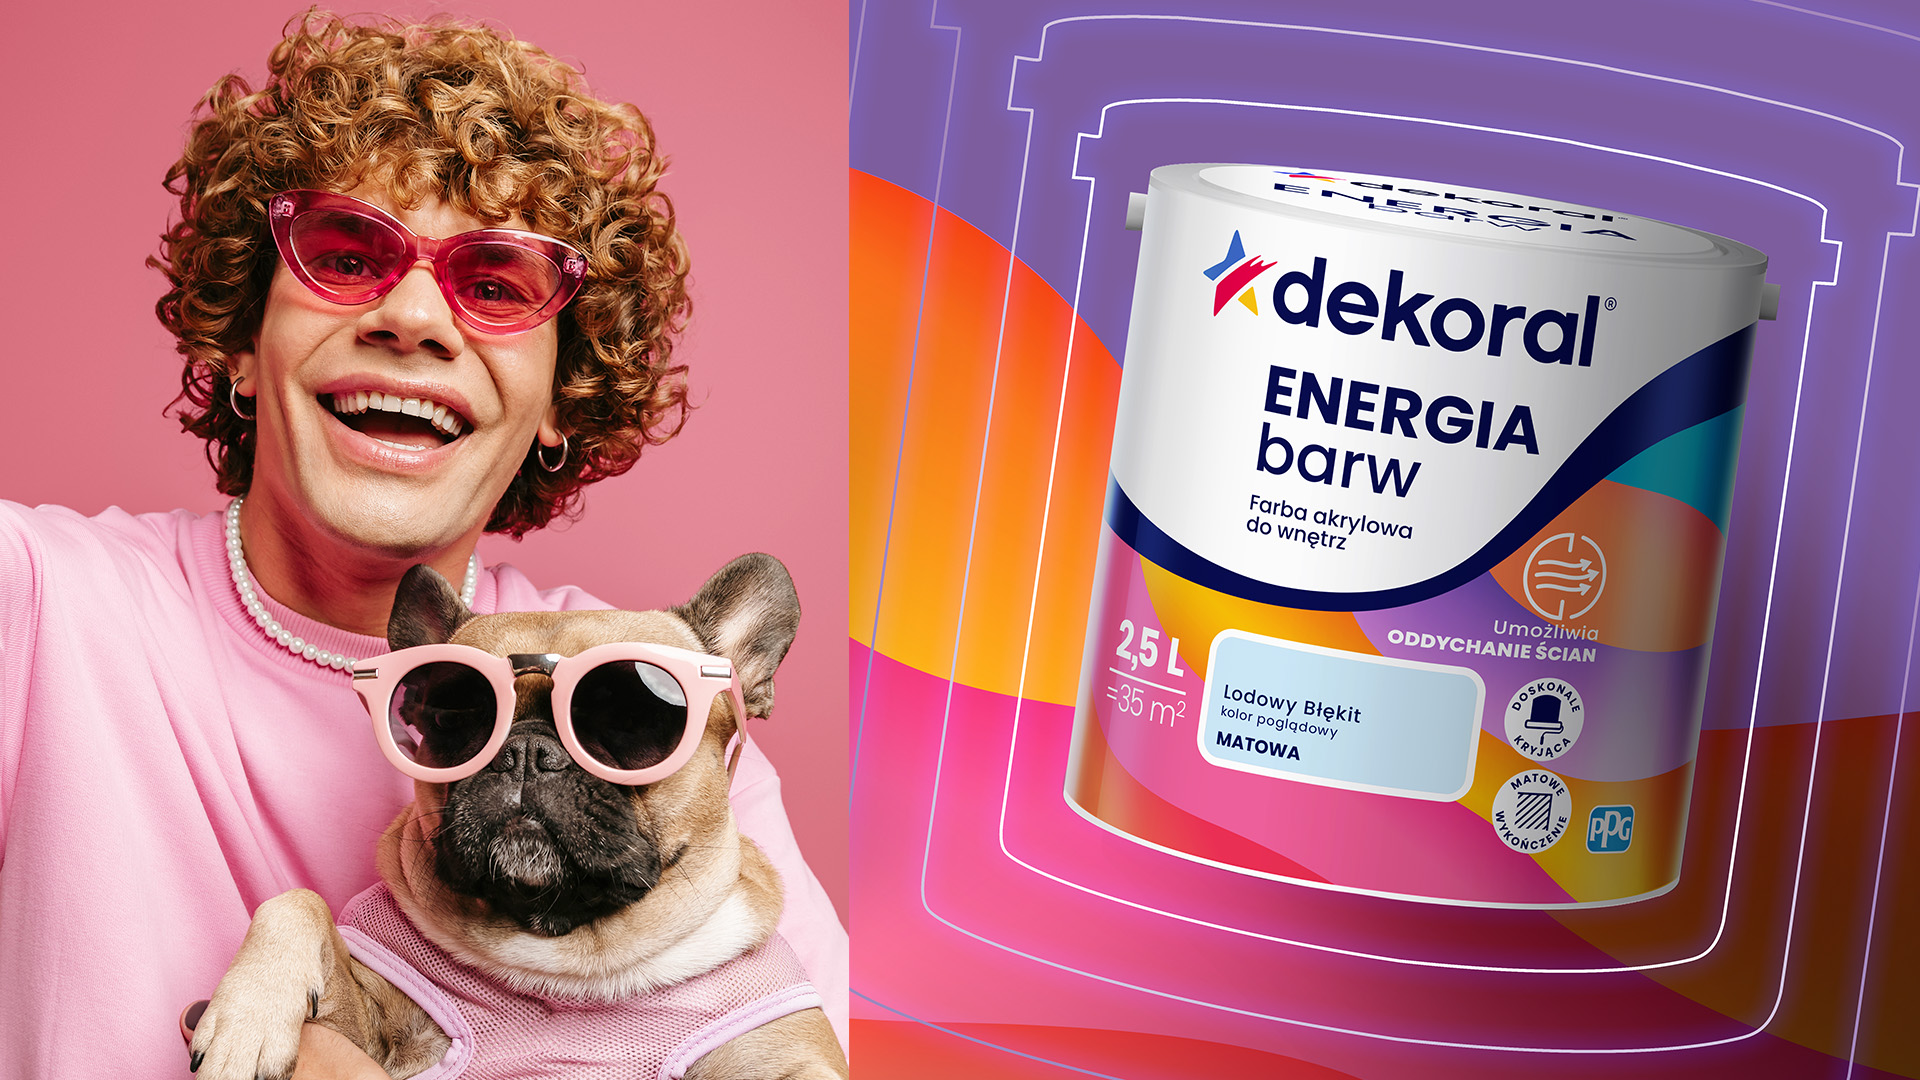 Dekoral rebranding - po prawo wizualizacja puszki Dekoral energia barw, po lewo zdjęcie uśmiechniętego mężczyzny w różowych okularach z psem w okularach na rękach